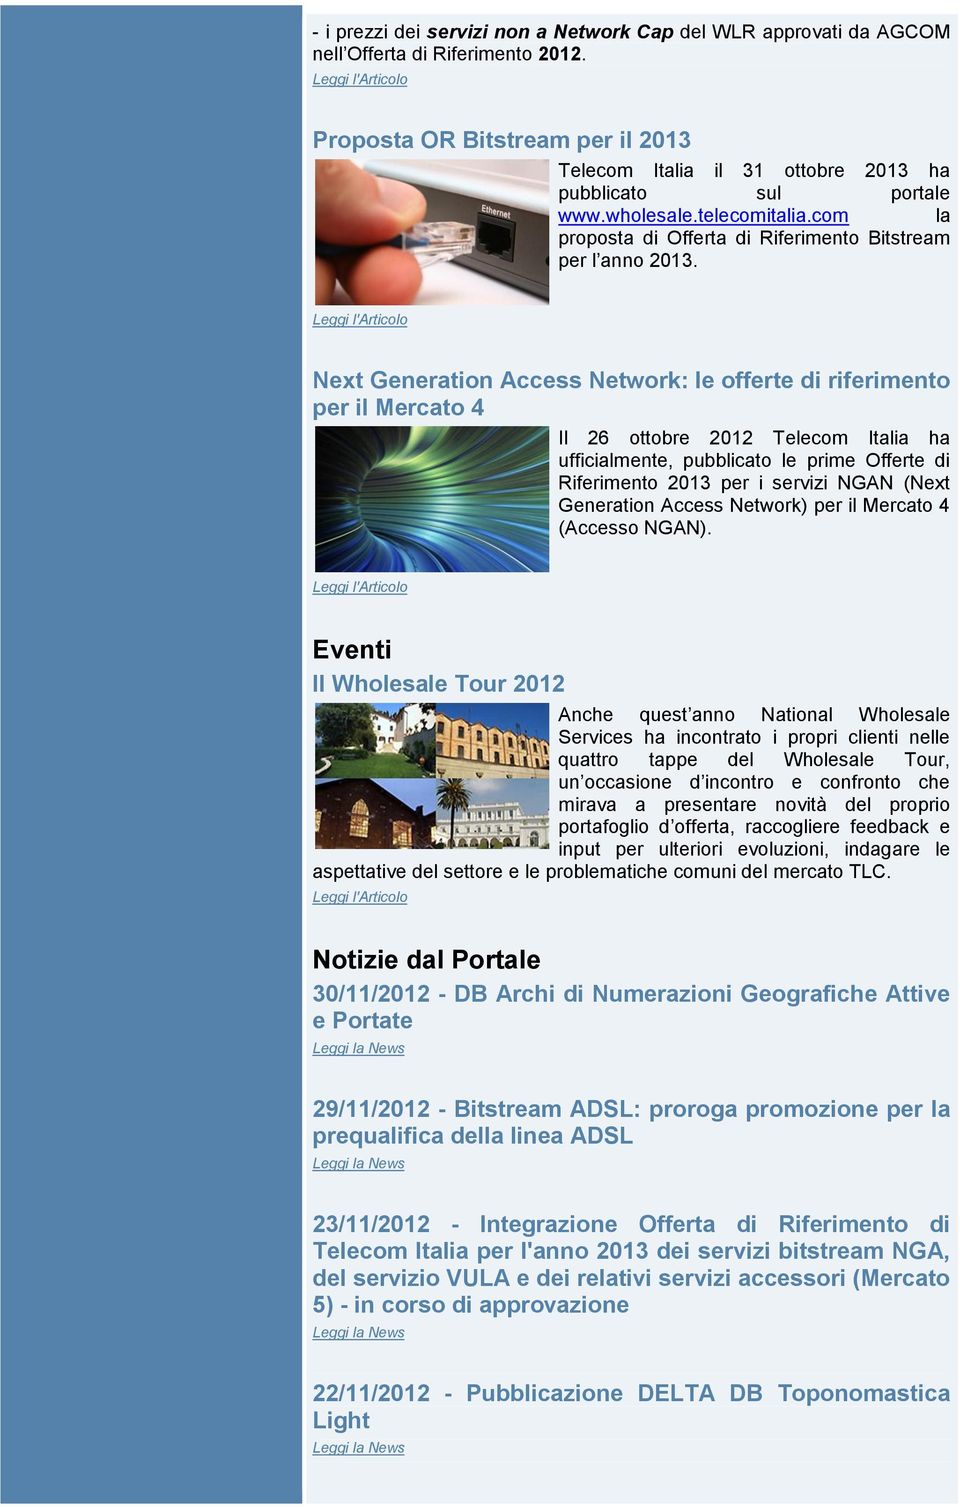 Next Generation Access Network: le offerte di riferimento per il Mercato 4 Il 26 ottobre 2012 Telecom Italia ha ufficialmente, pubblicato le prime Offerte di Riferimento 2013 per i servizi NGAN (Next